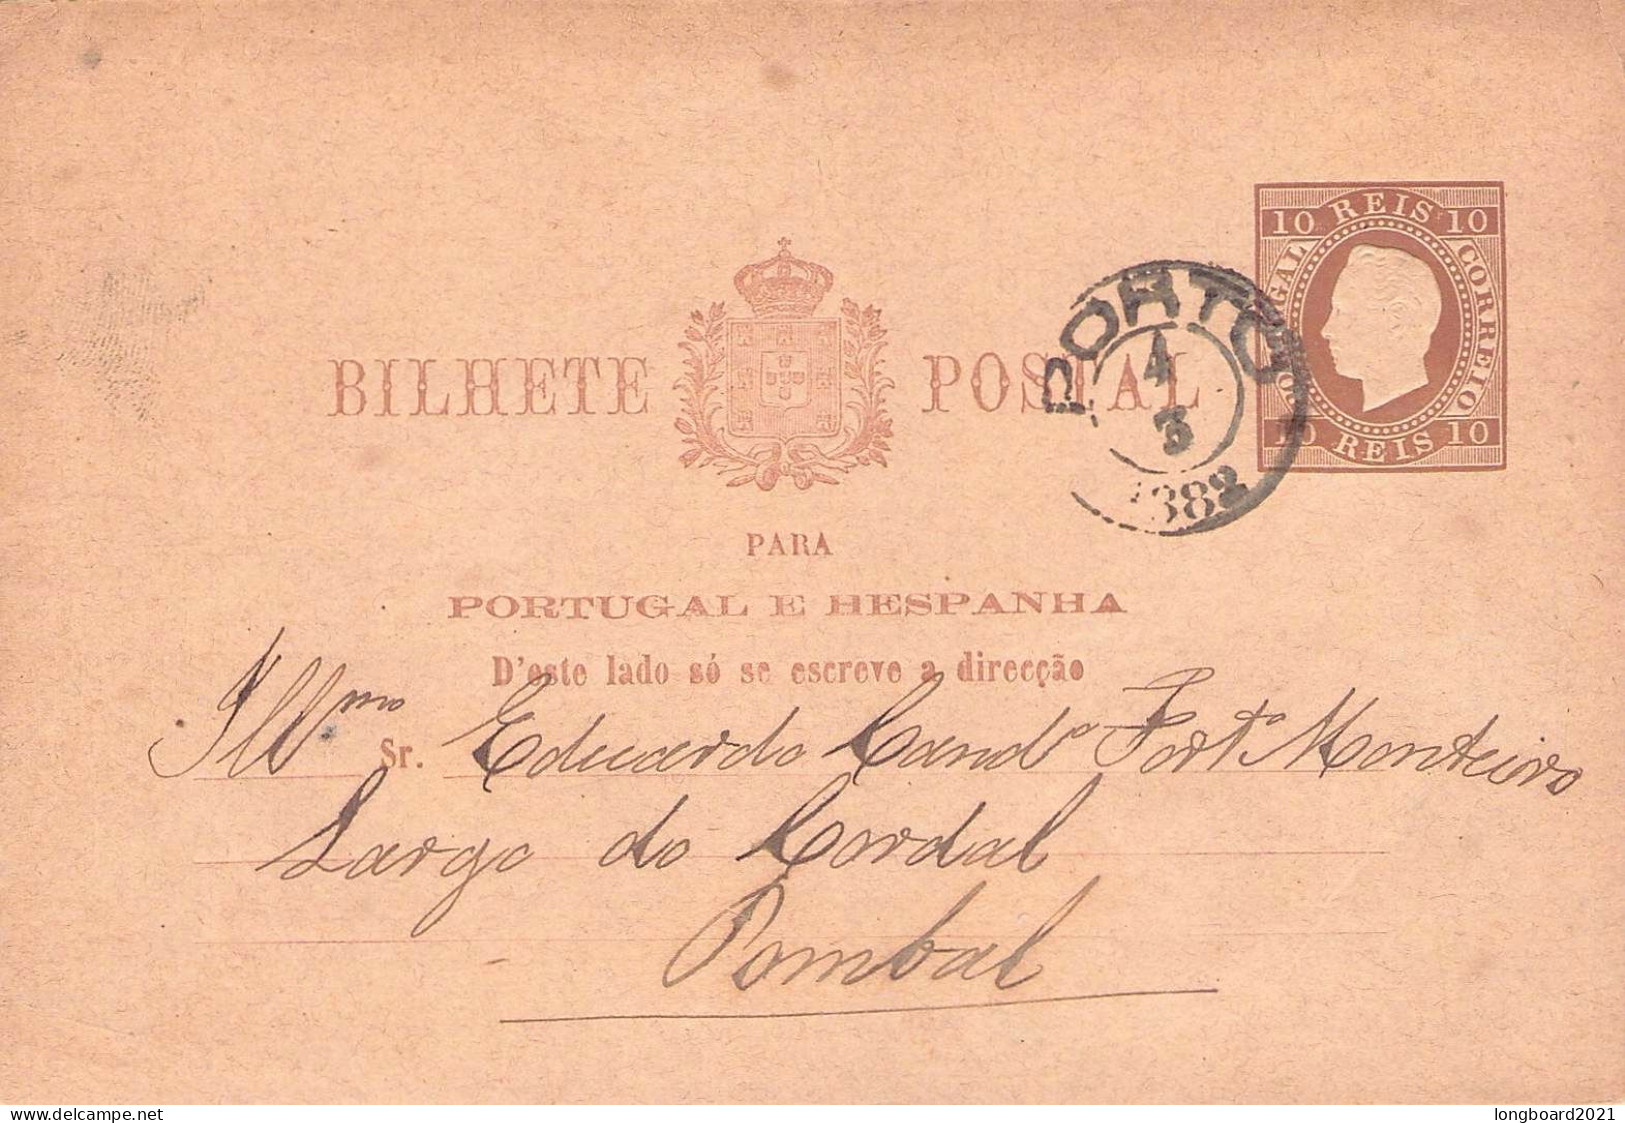 PORTUGAL - BILHETE POSTAL 10 REIS (1882) Mi P7 / *1007 - Enteros Postales